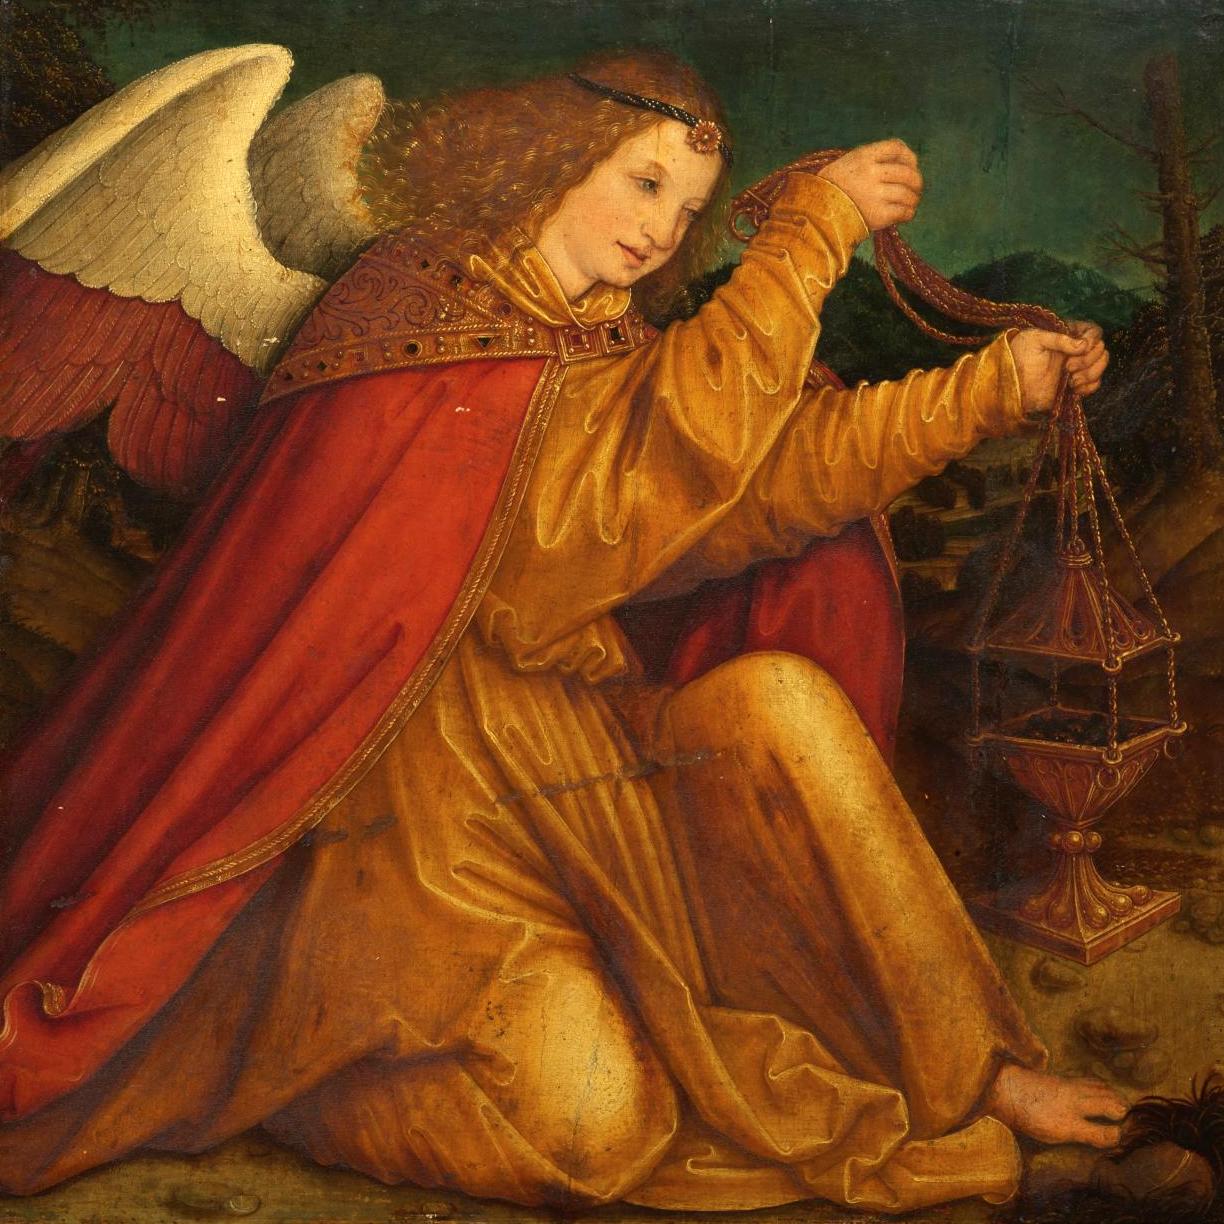 An Unusual Angel by Bernhard Strigel - Spotlight